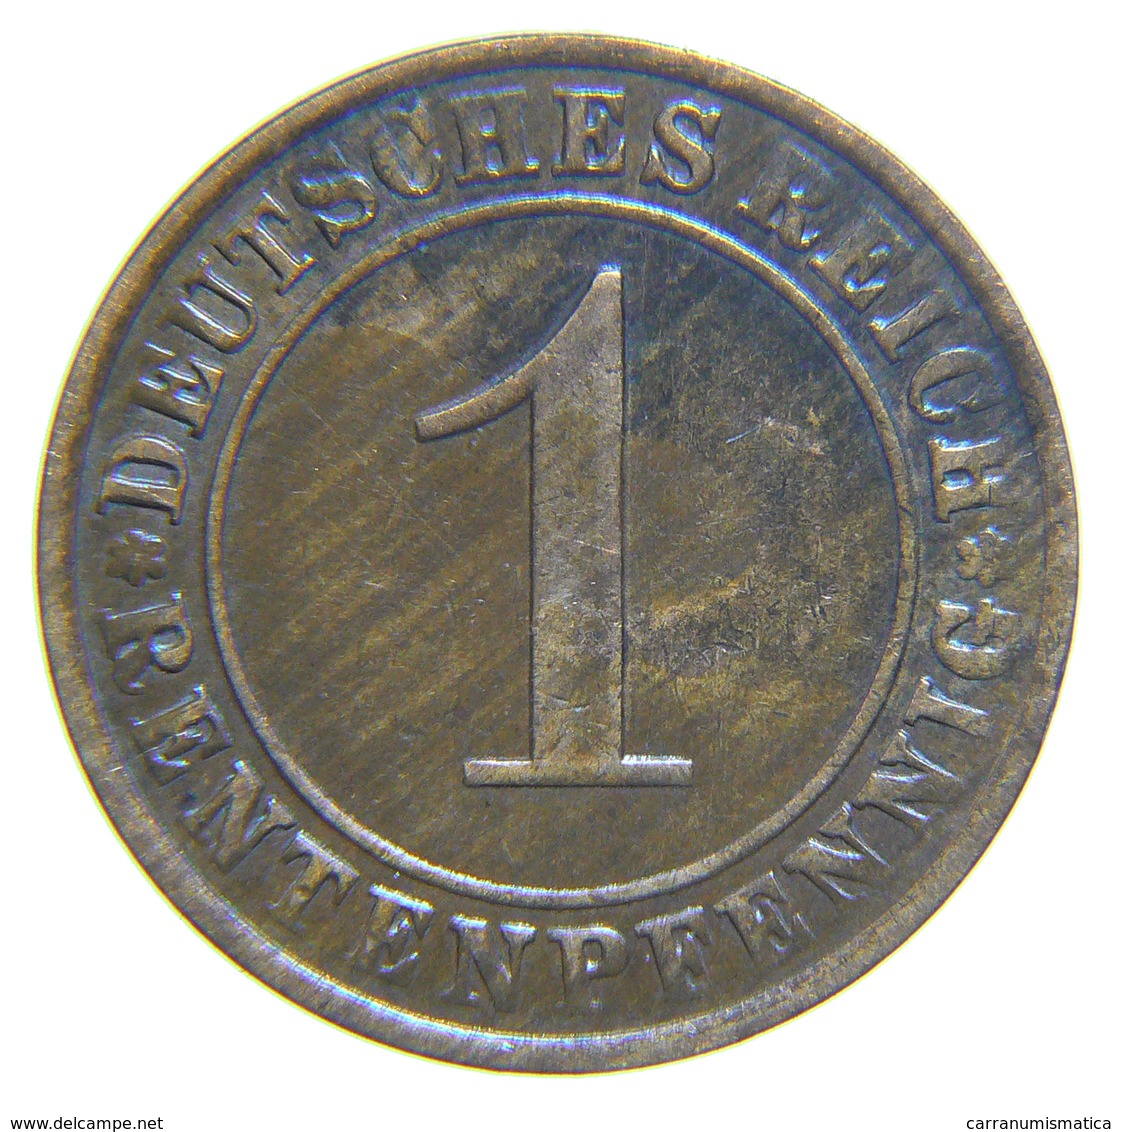 [NC] DEUTSCHLAND / GERMANY - Weimarer Republik - 1 REICHSPFENNIG ( 1924 A) - 1 Rentenpfennig & 1 Reichspfennig